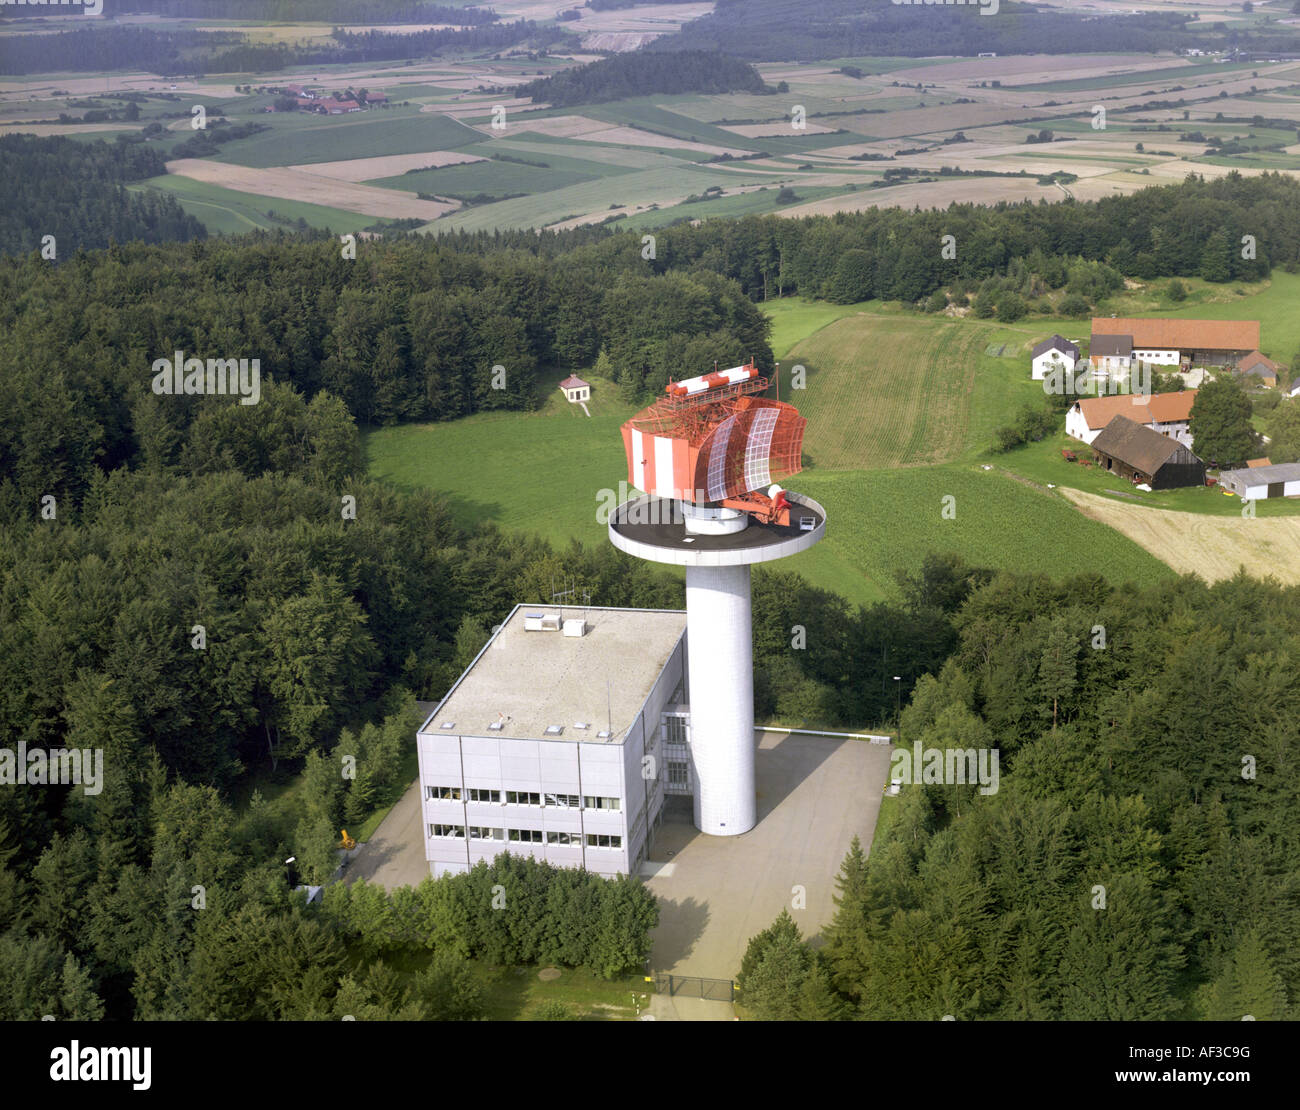 Le contrôle de la circulation aérienne, à l'unité radar près de Lauterhofen, Germany Banque D'Images